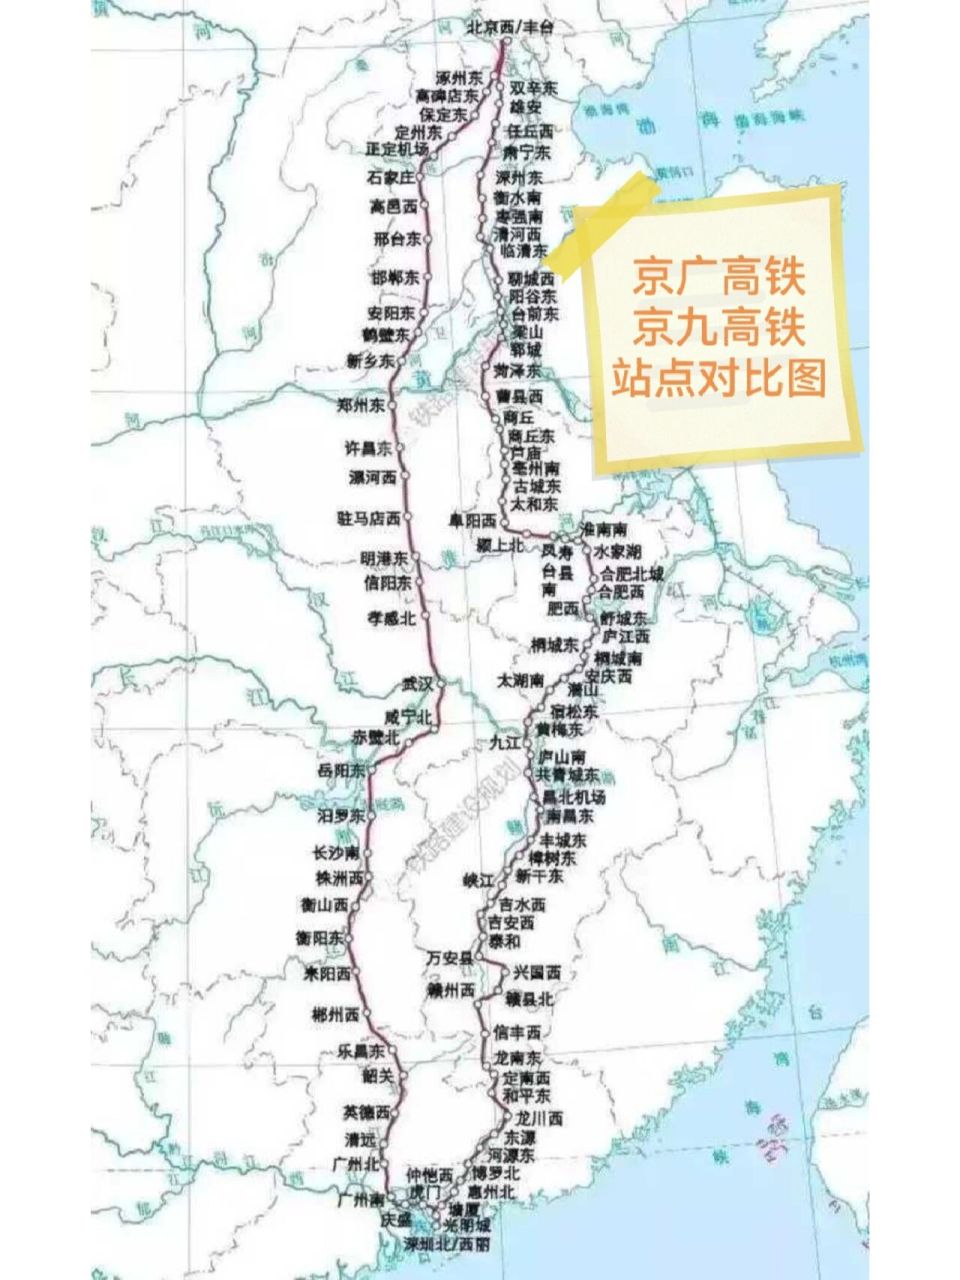 京九高铁和京广高铁都是贯穿祖国南北的高铁线,京广高铁比京九修通的